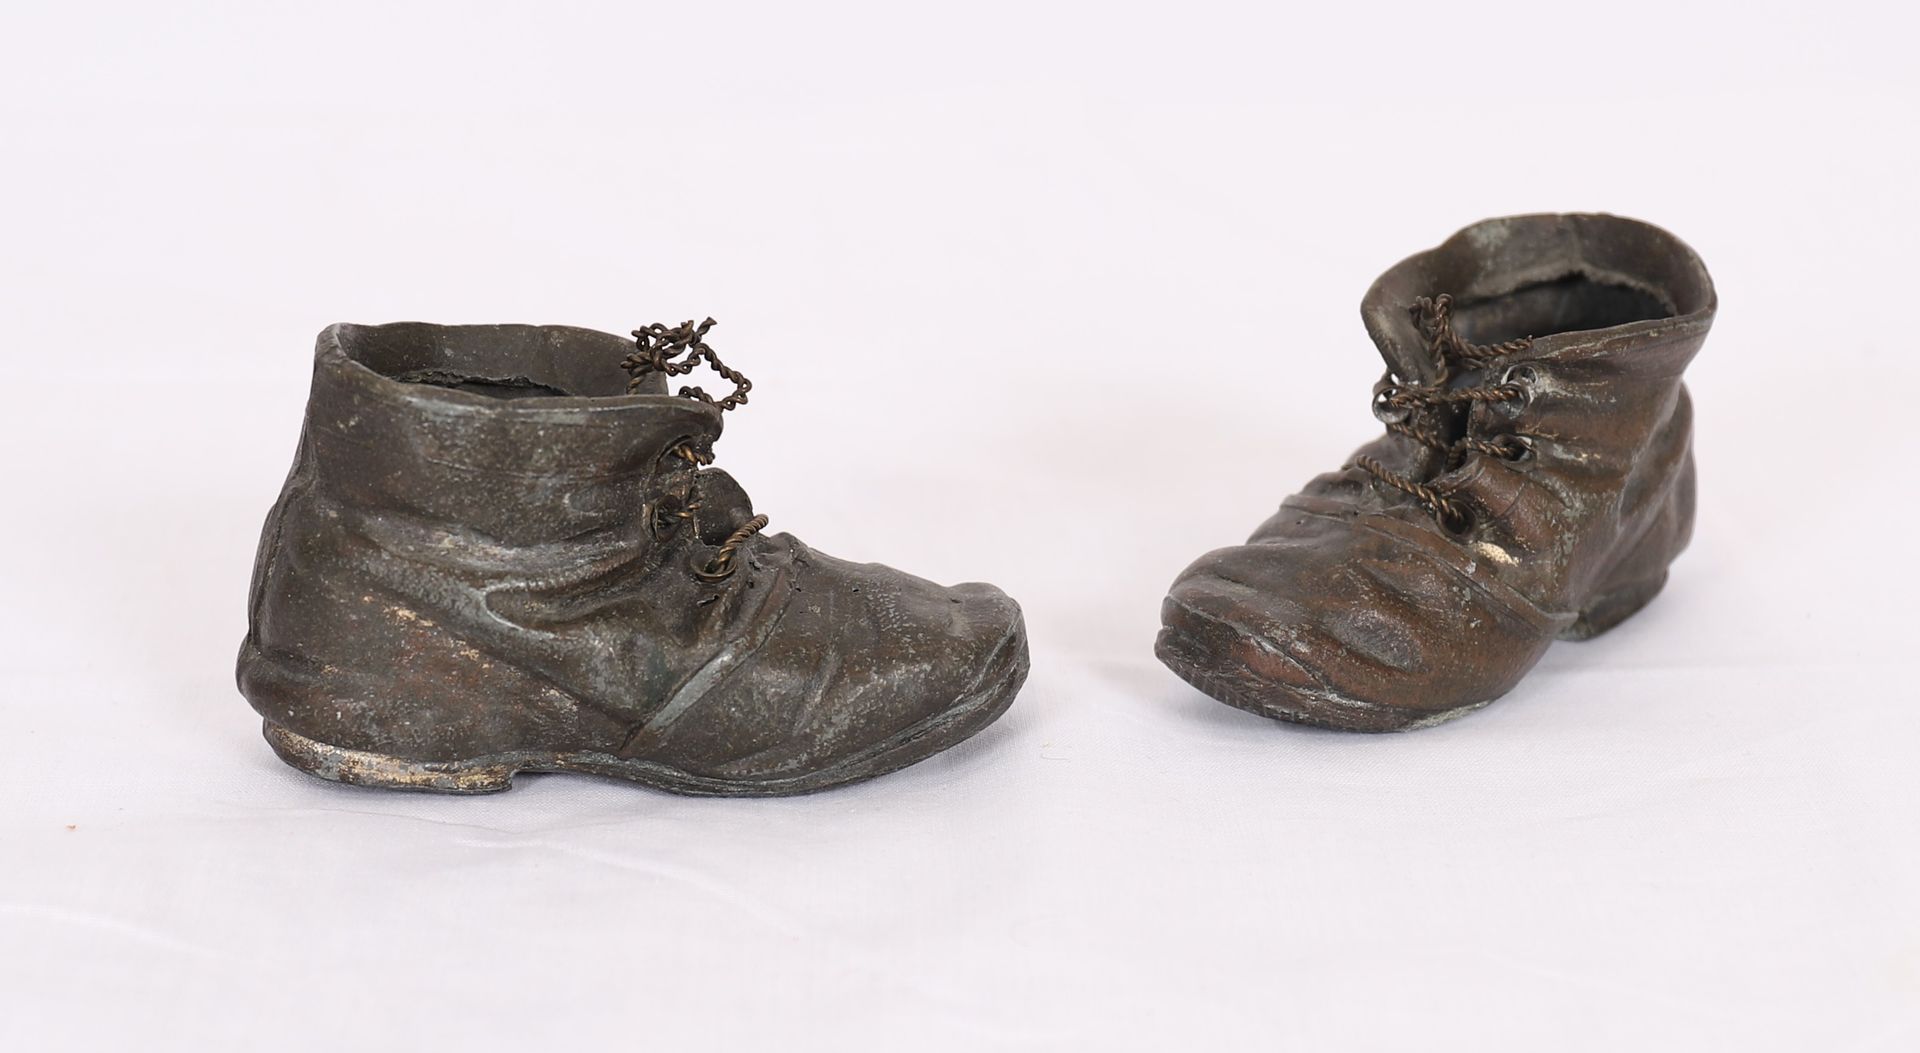 Null 魅力四射的古铜色皮鞋一对

高：6厘米

磨损的